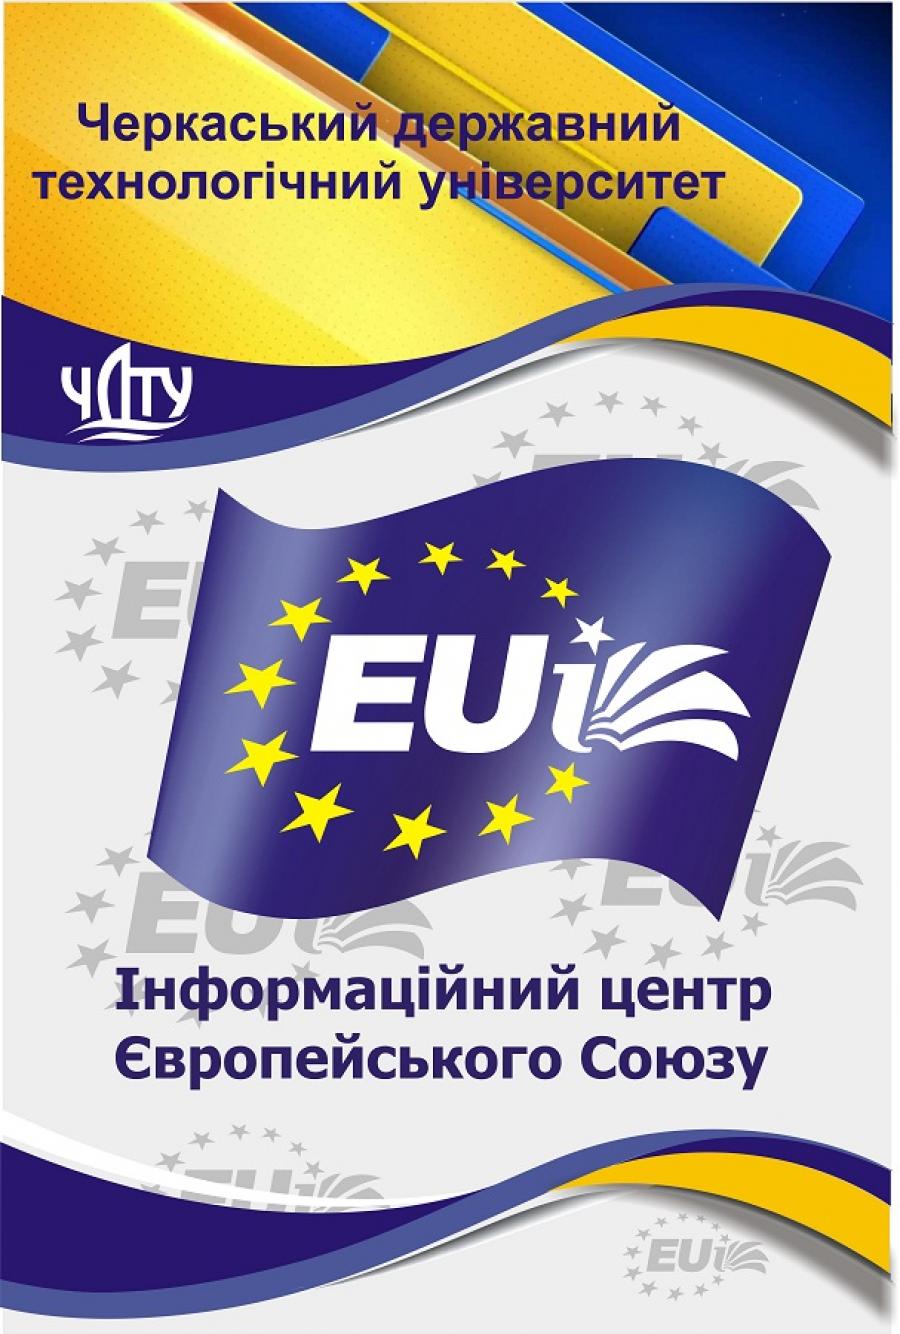 Інформаційний центр Європейського Союзу в Черкаській області запрошує на онлайн вебінари  від Представництва ЄС в Україні «Мікробізнес в Україні: європейський досвід»